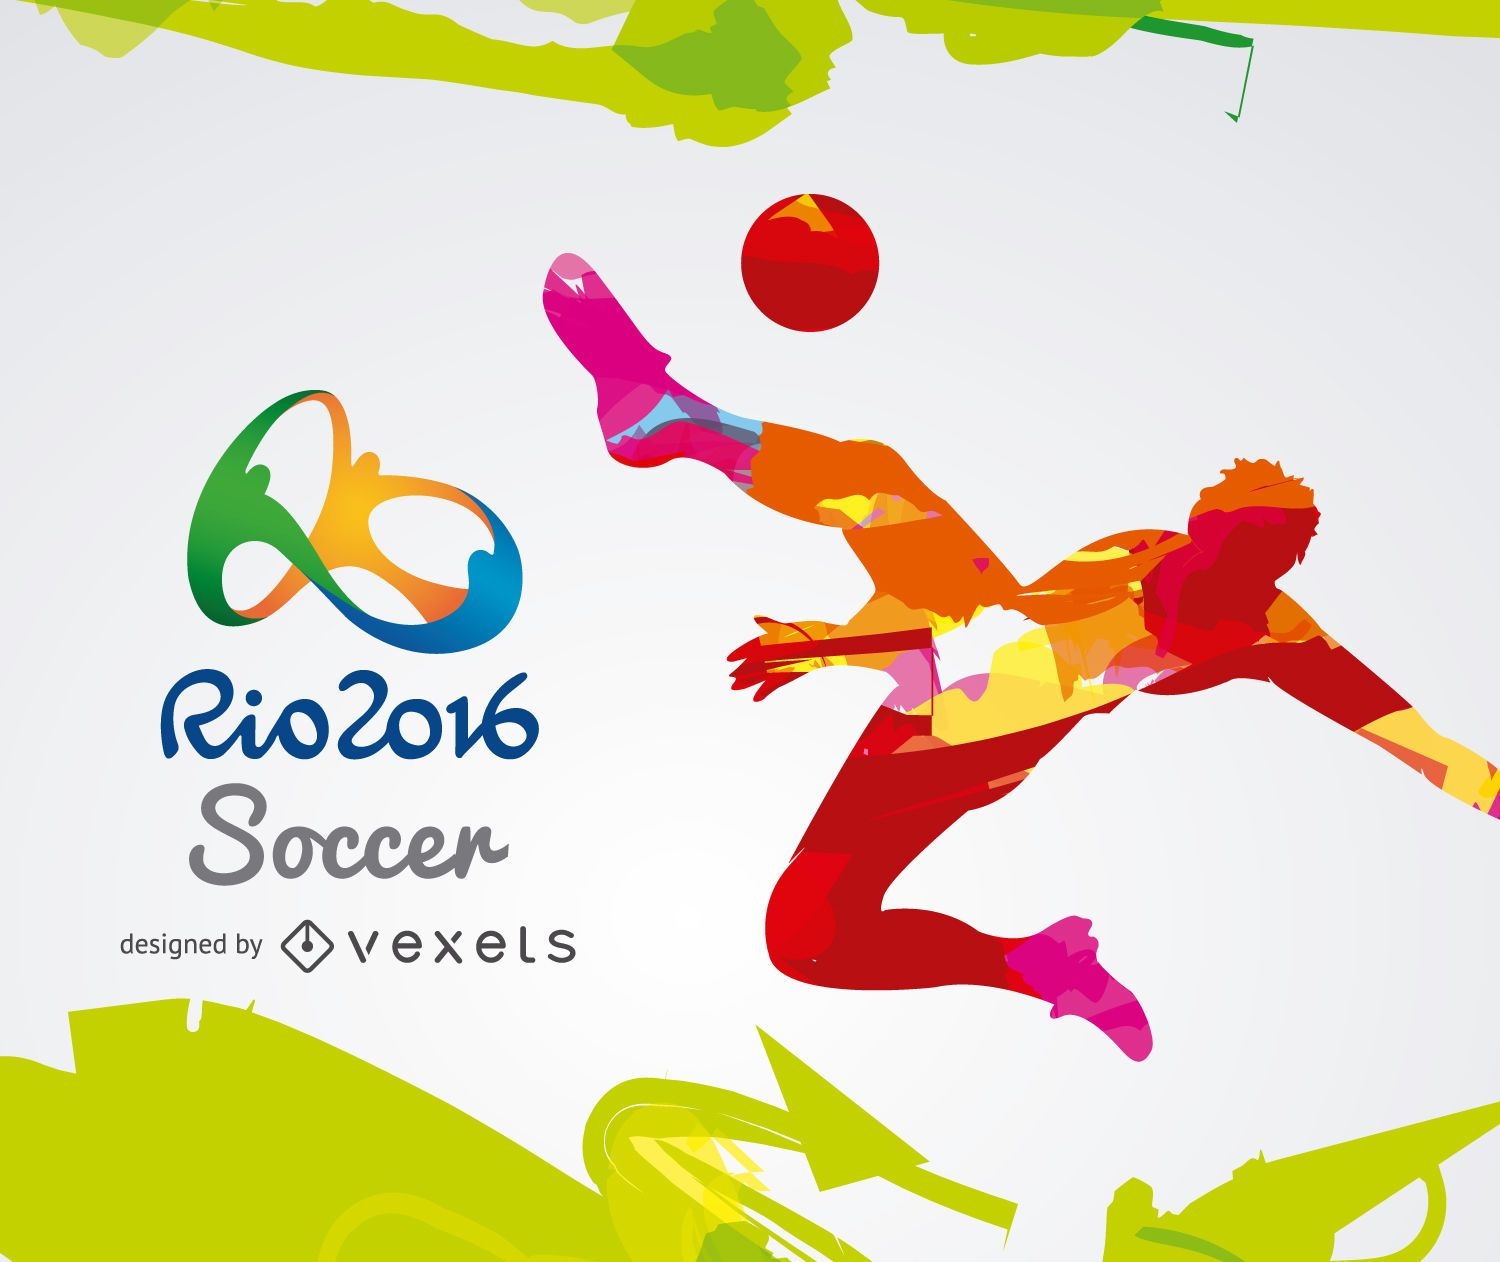 Juegos Olímpicos Rio 2016-Fútbol